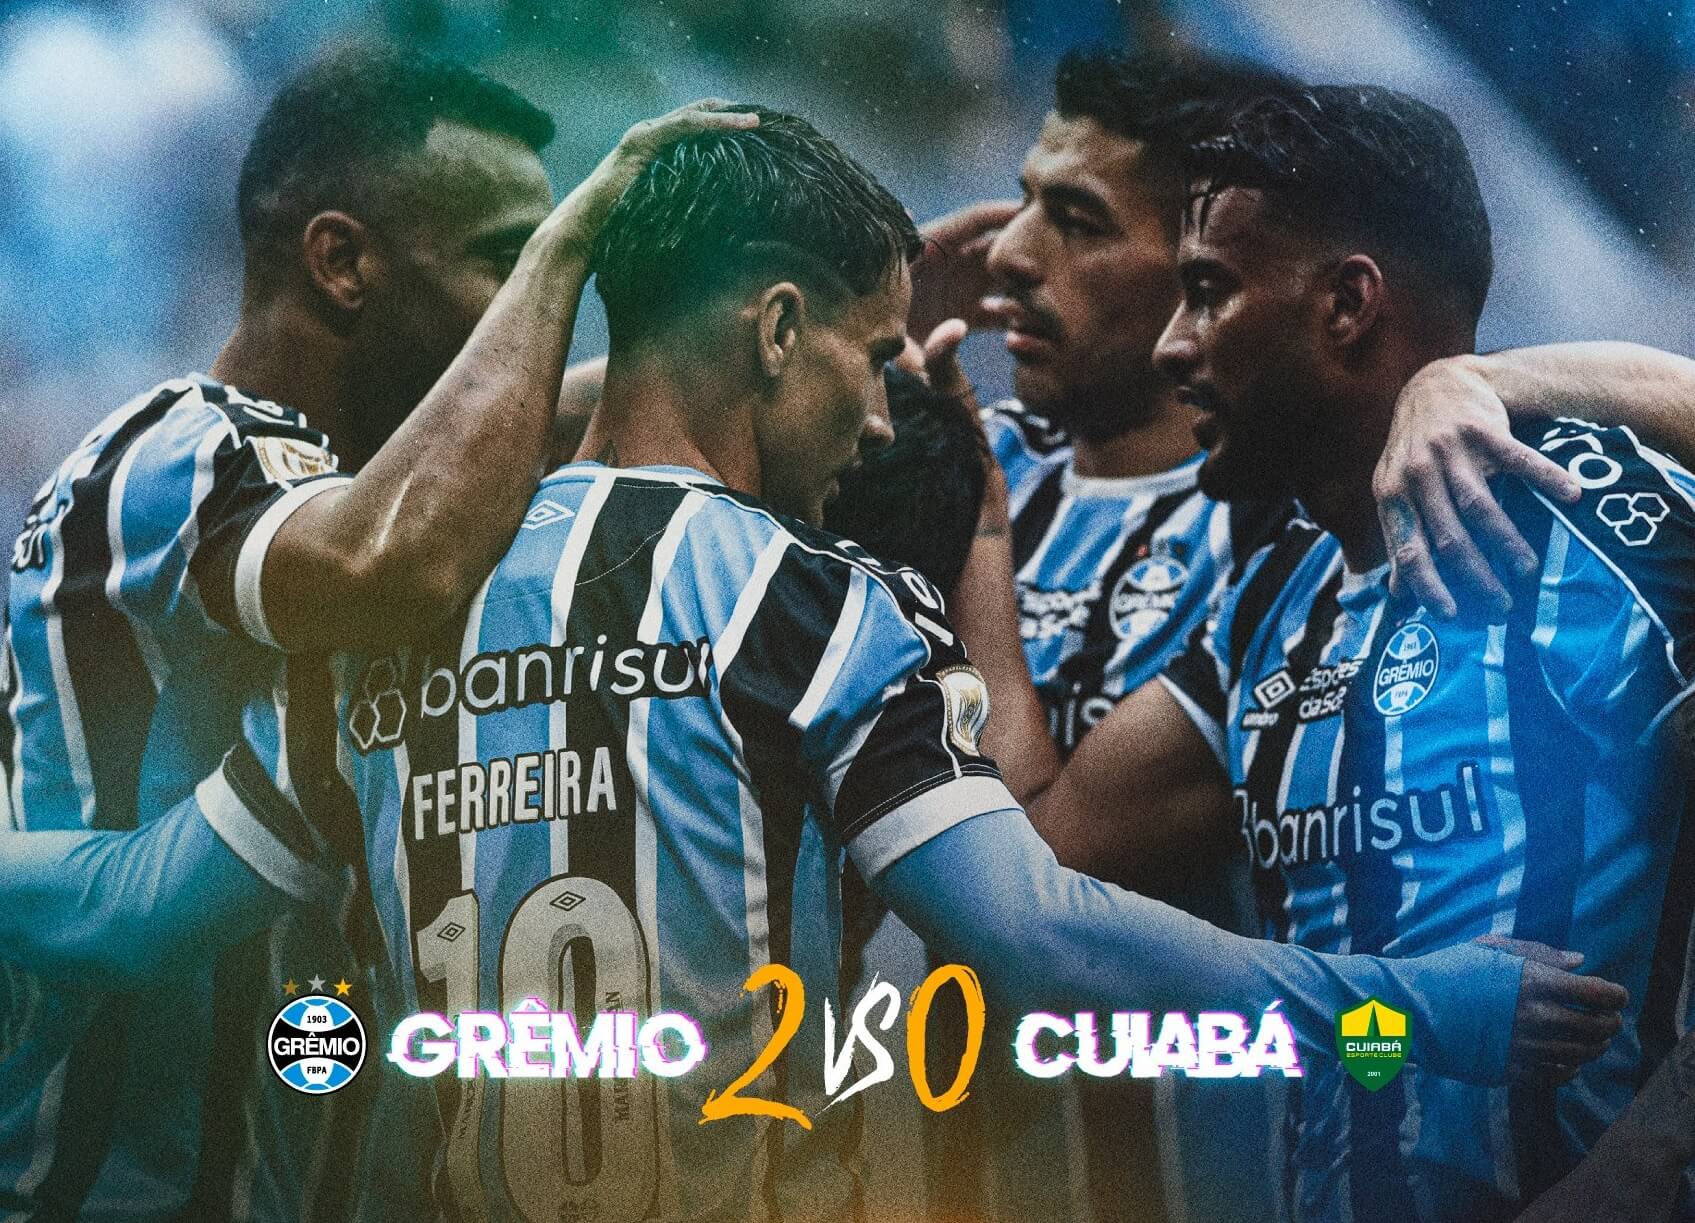 Grêmio vs Fortaleza: A Clash of Titans